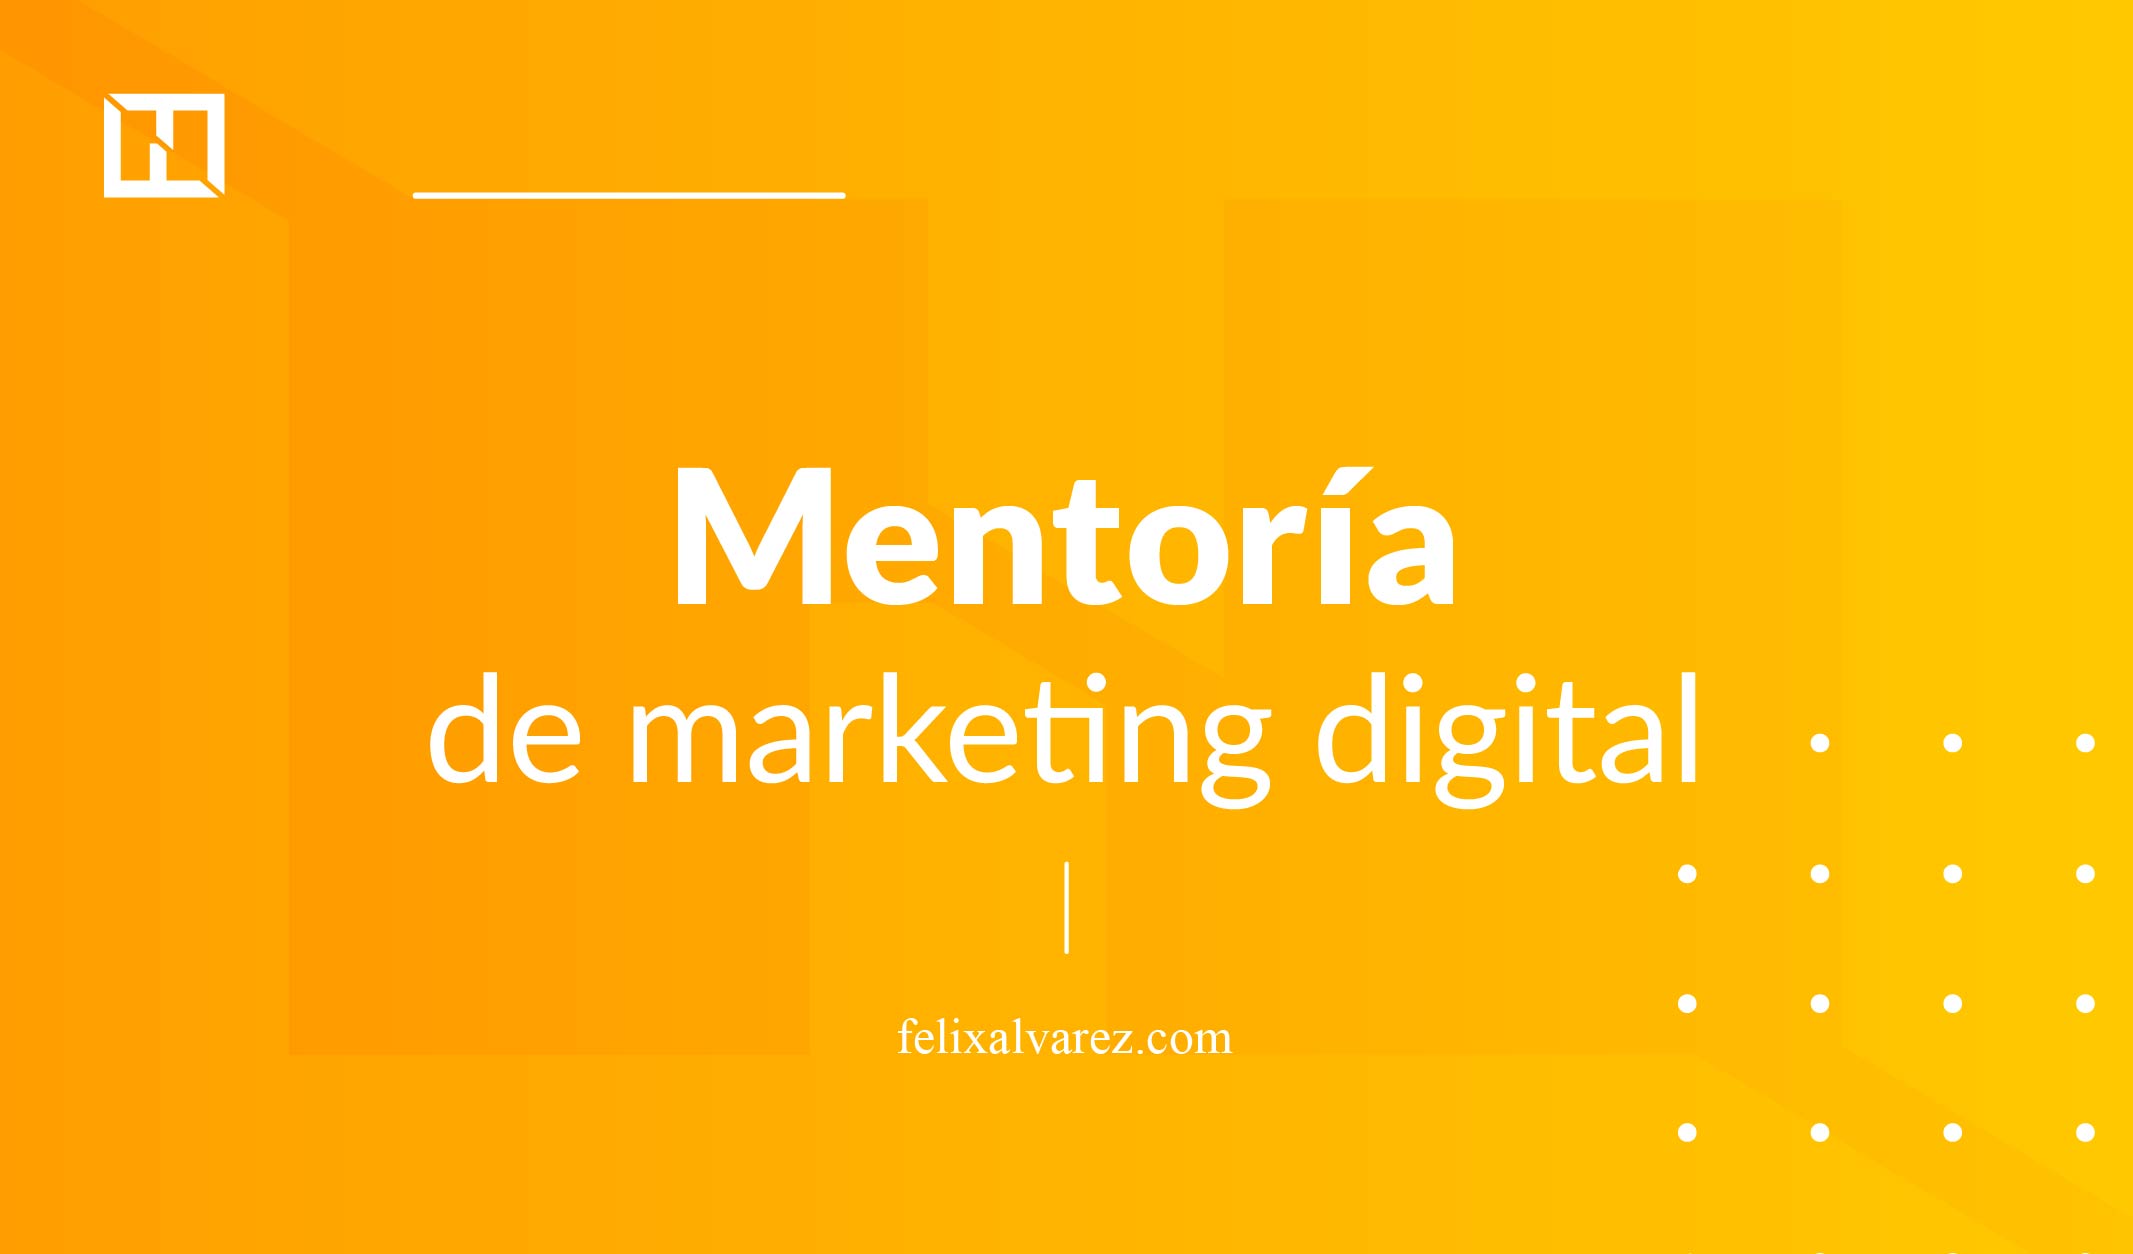 mentoría de marketing digital gratuita de Félix Álvarez